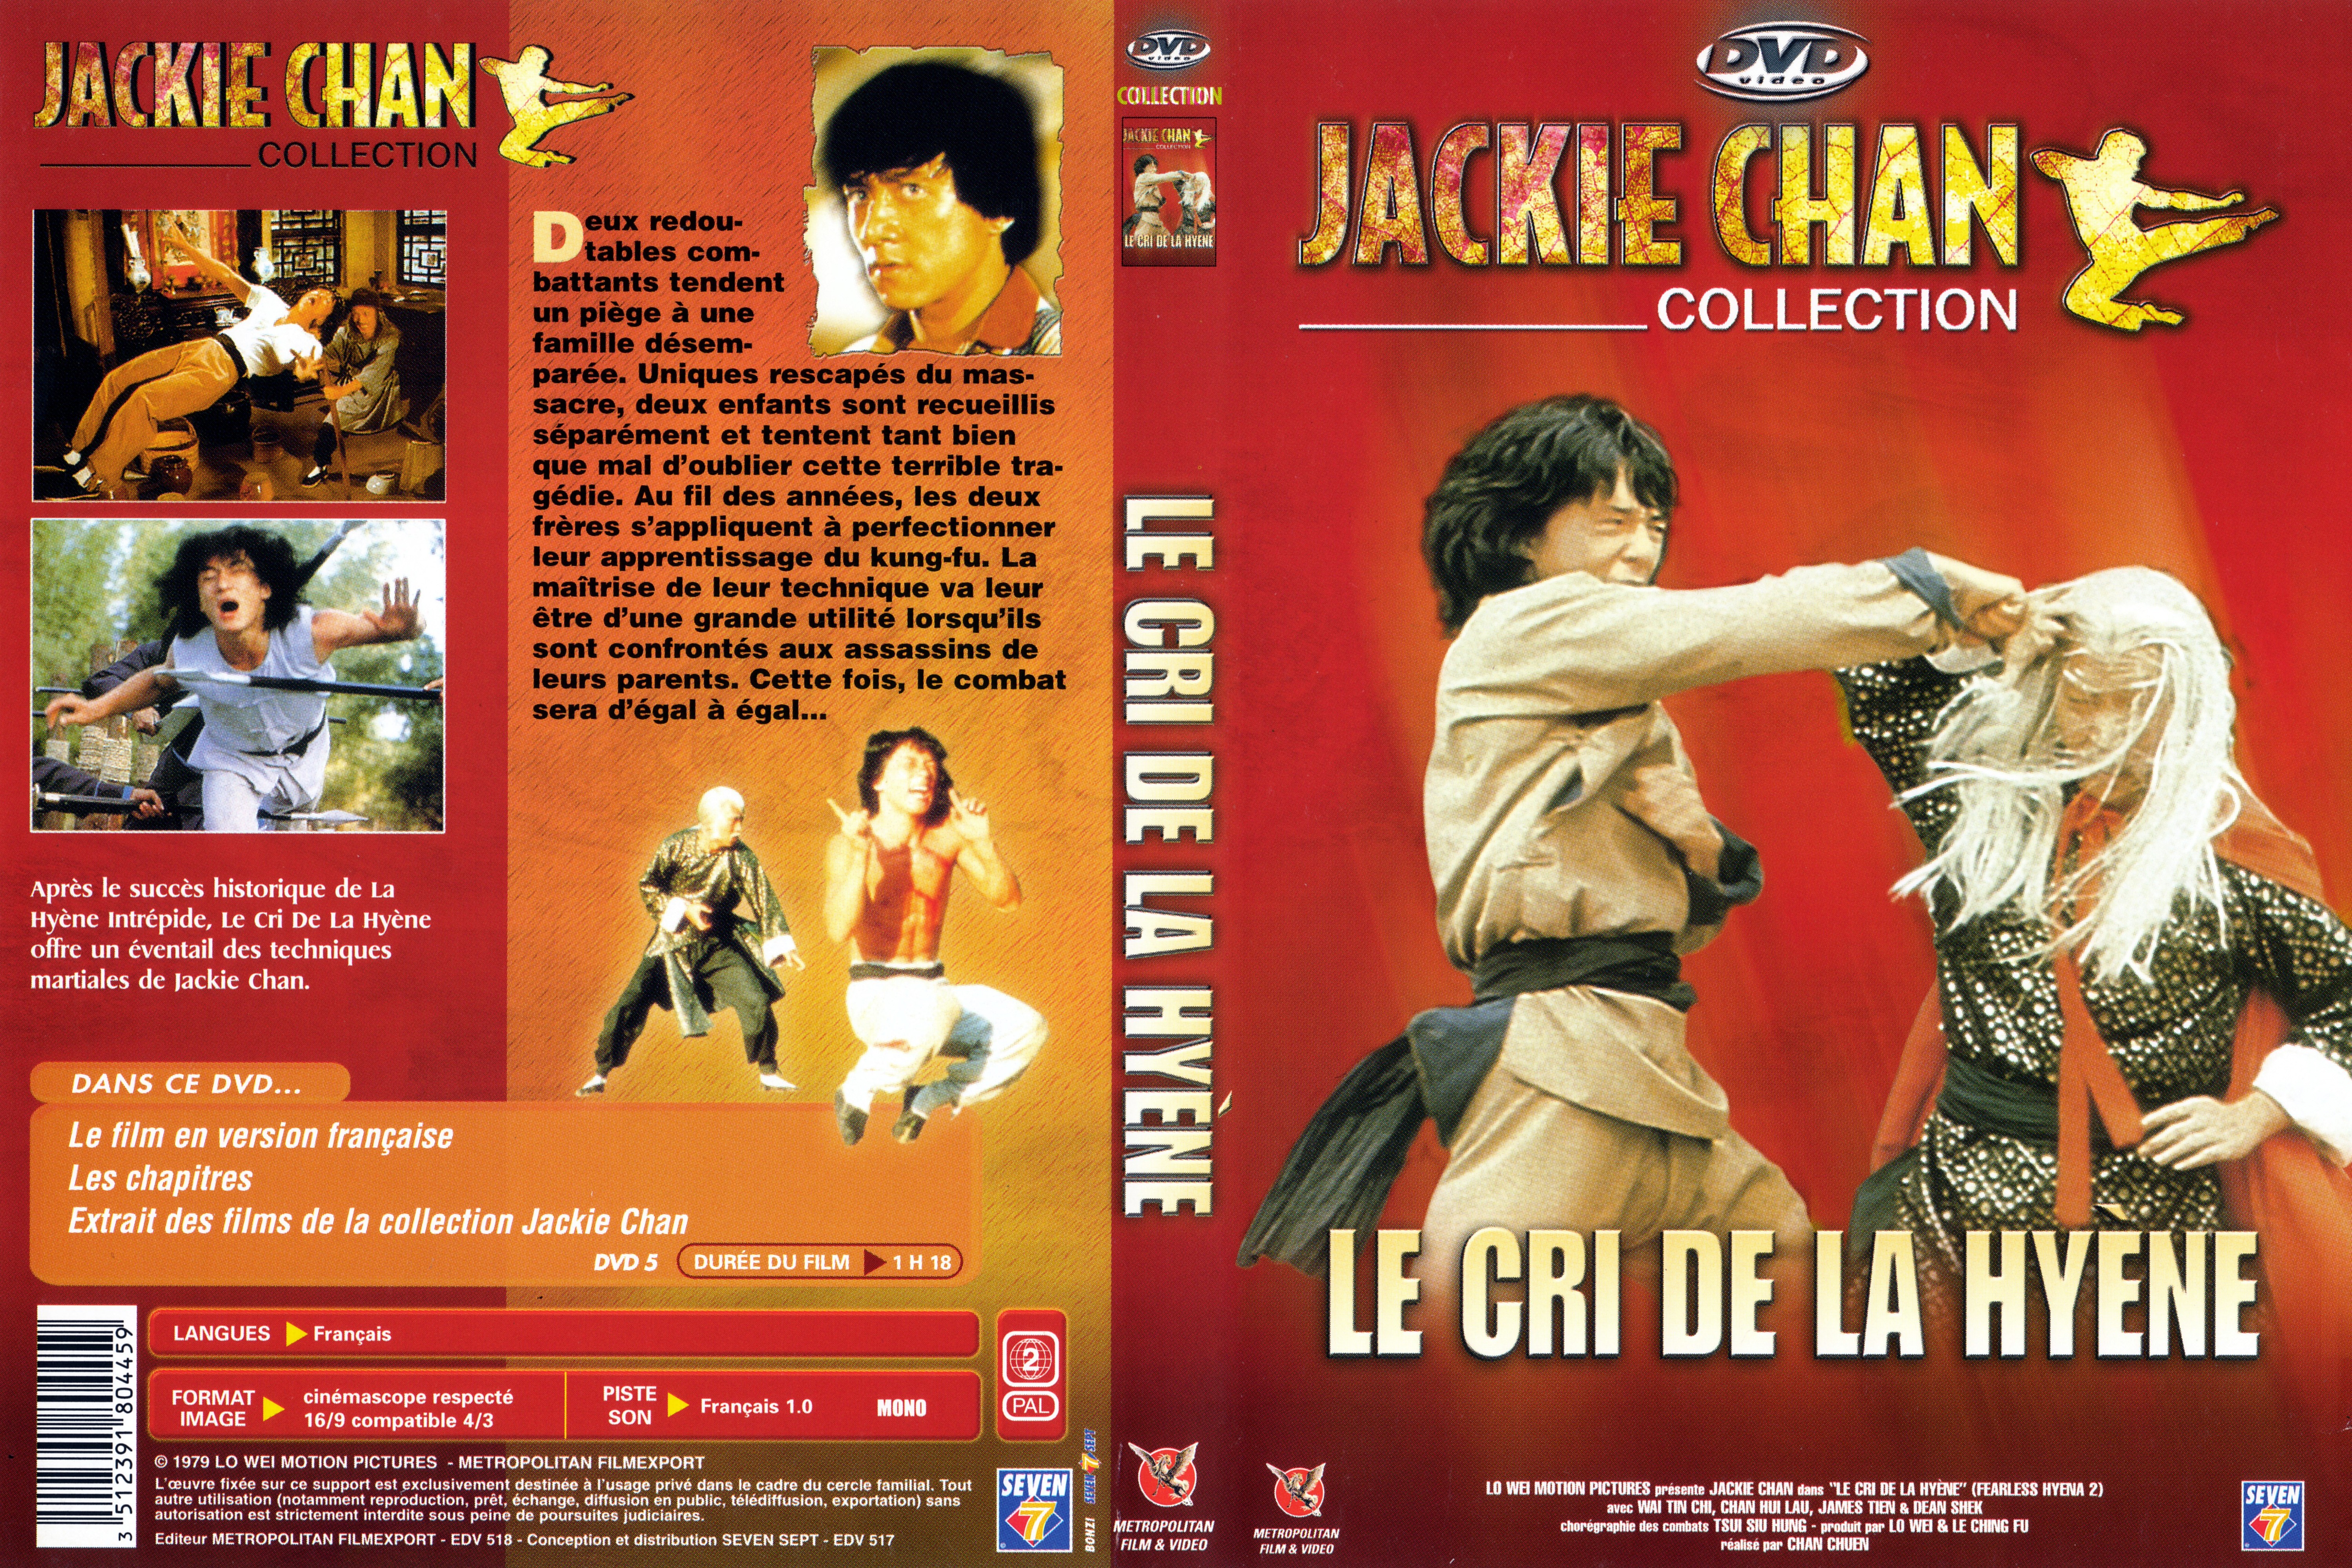 Jaquette DVD Le cri de la hyne v2